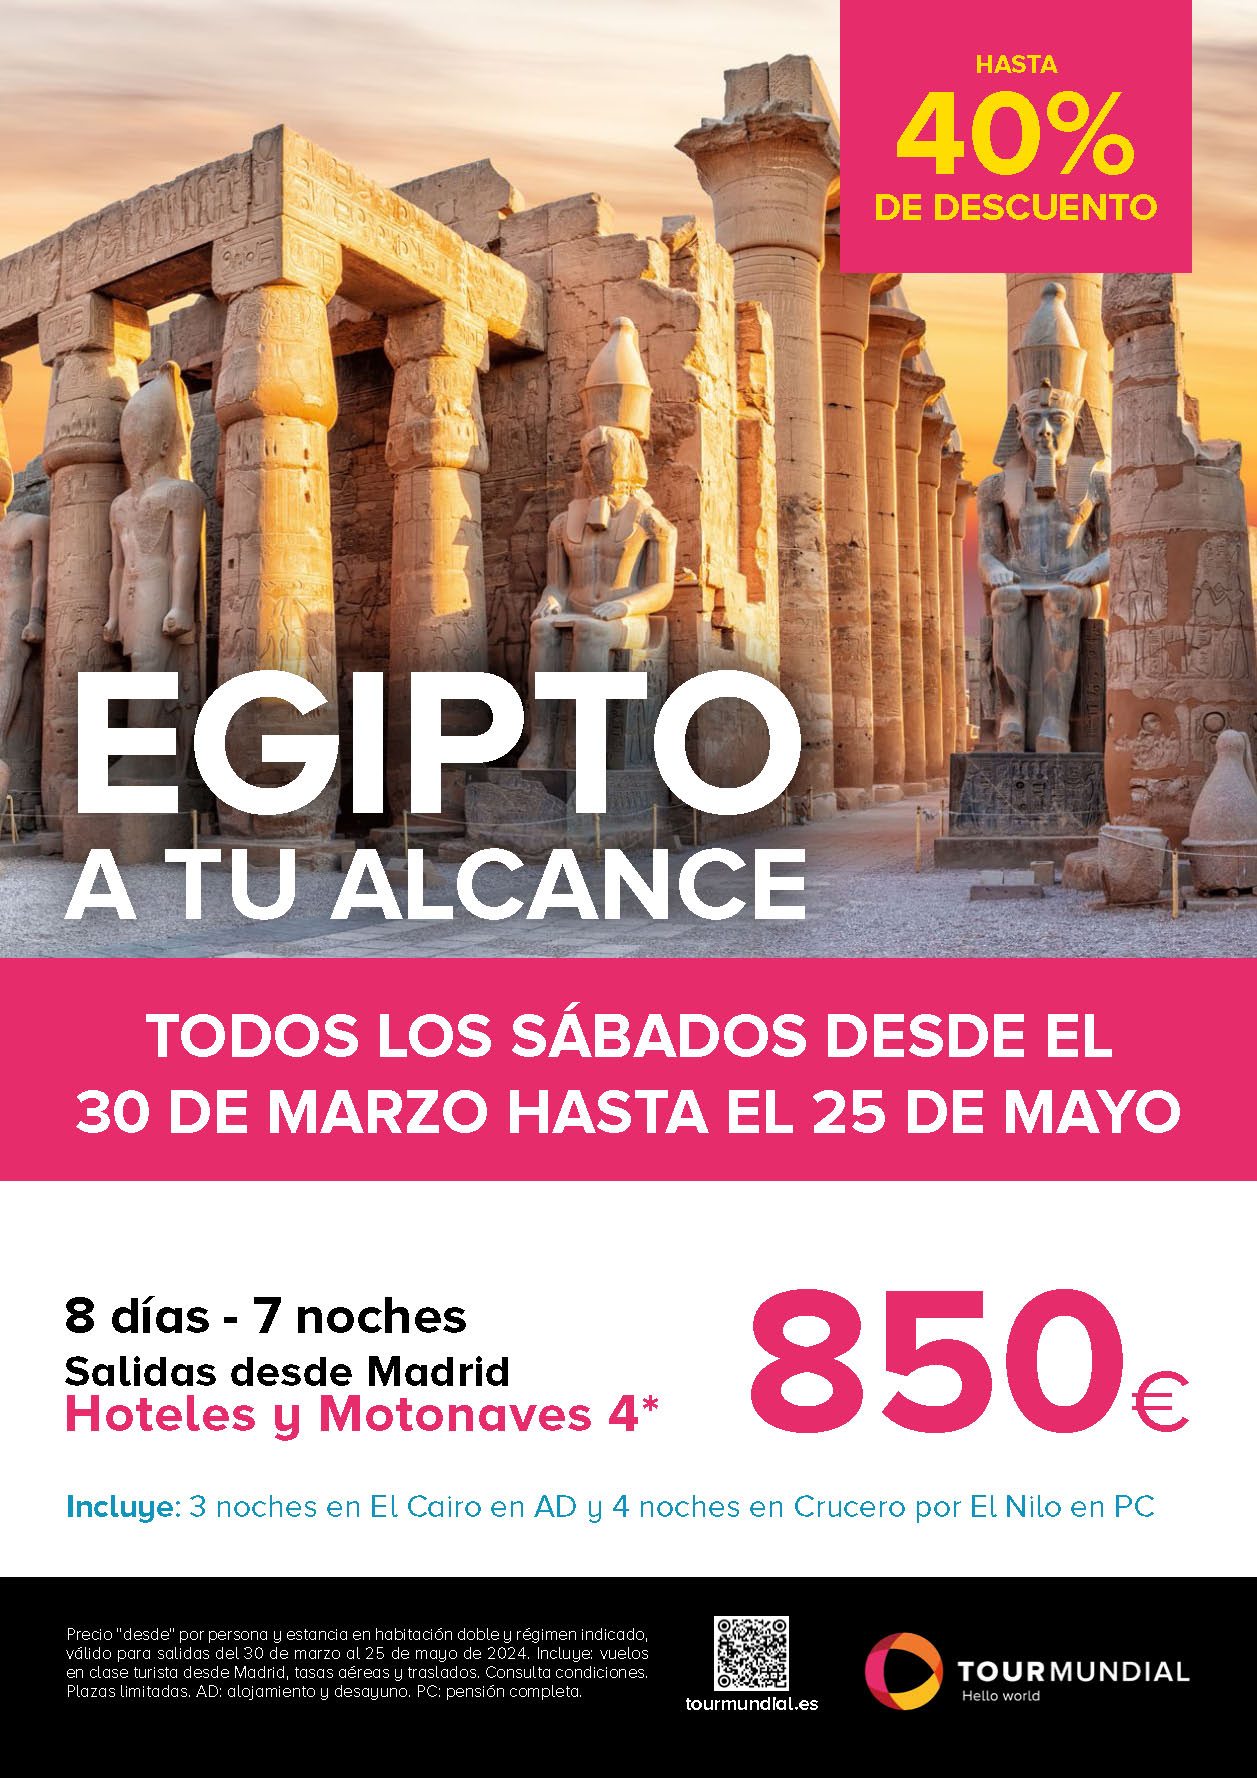 Oferta Tourmundial 2024 circuito y crucero Egipto 8 dias hoteles y motonaves 4 estrellas salidas marzo a mayo desde Madrid